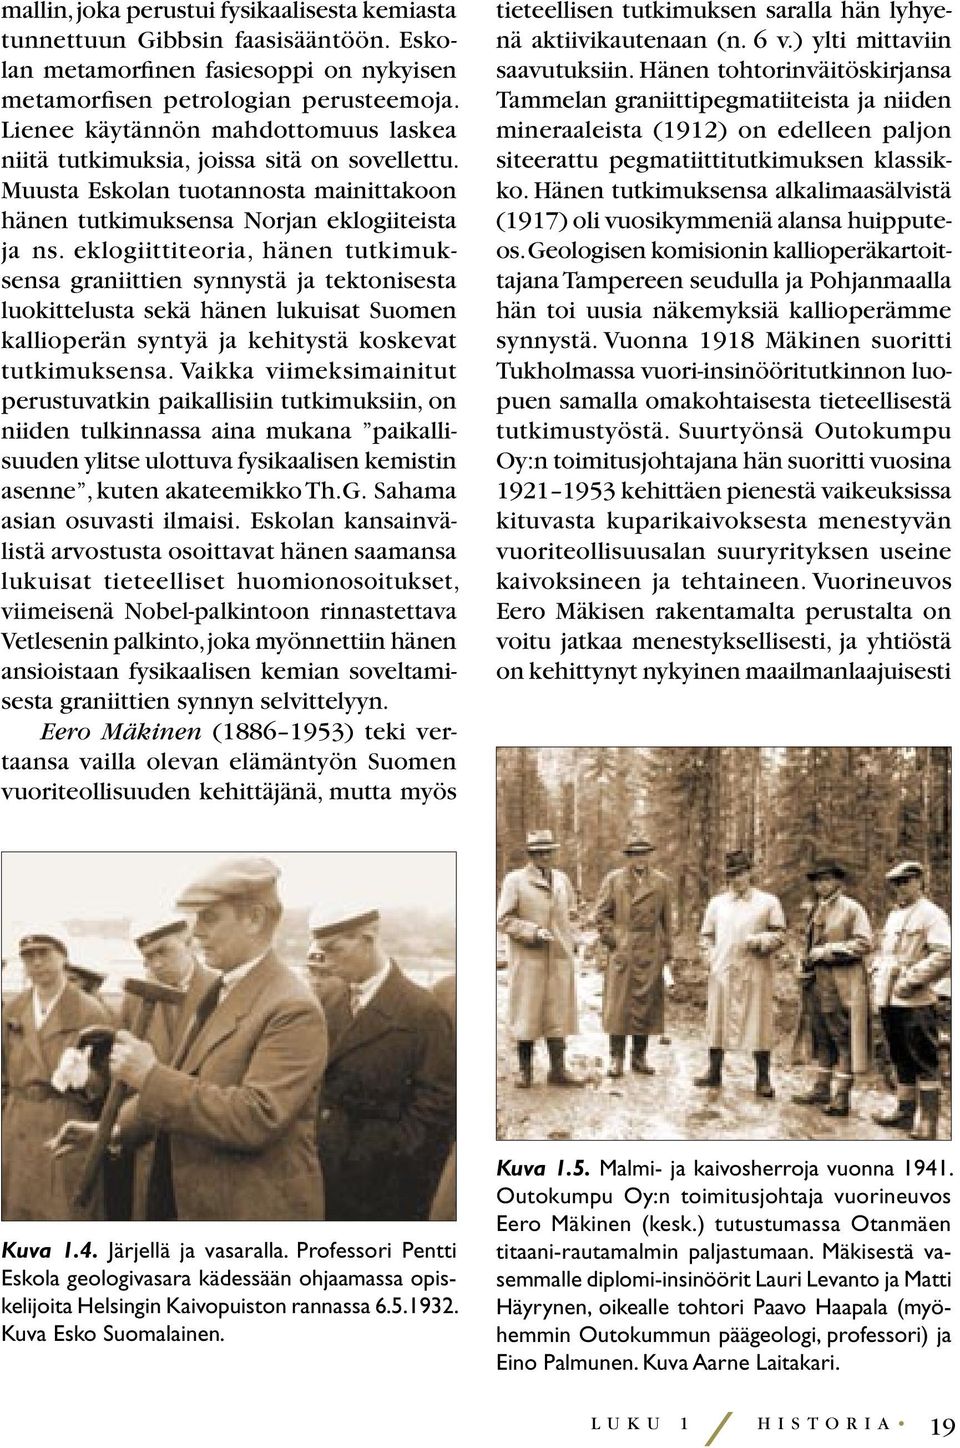 eklogiittiteoria, hänen tutkimuksensa graniittien synnystä ja tektonisesta luokittelusta sekä hänen lukuisat Suomen kallioperän syntyä ja kehitystä koskevat tutkimuksensa.